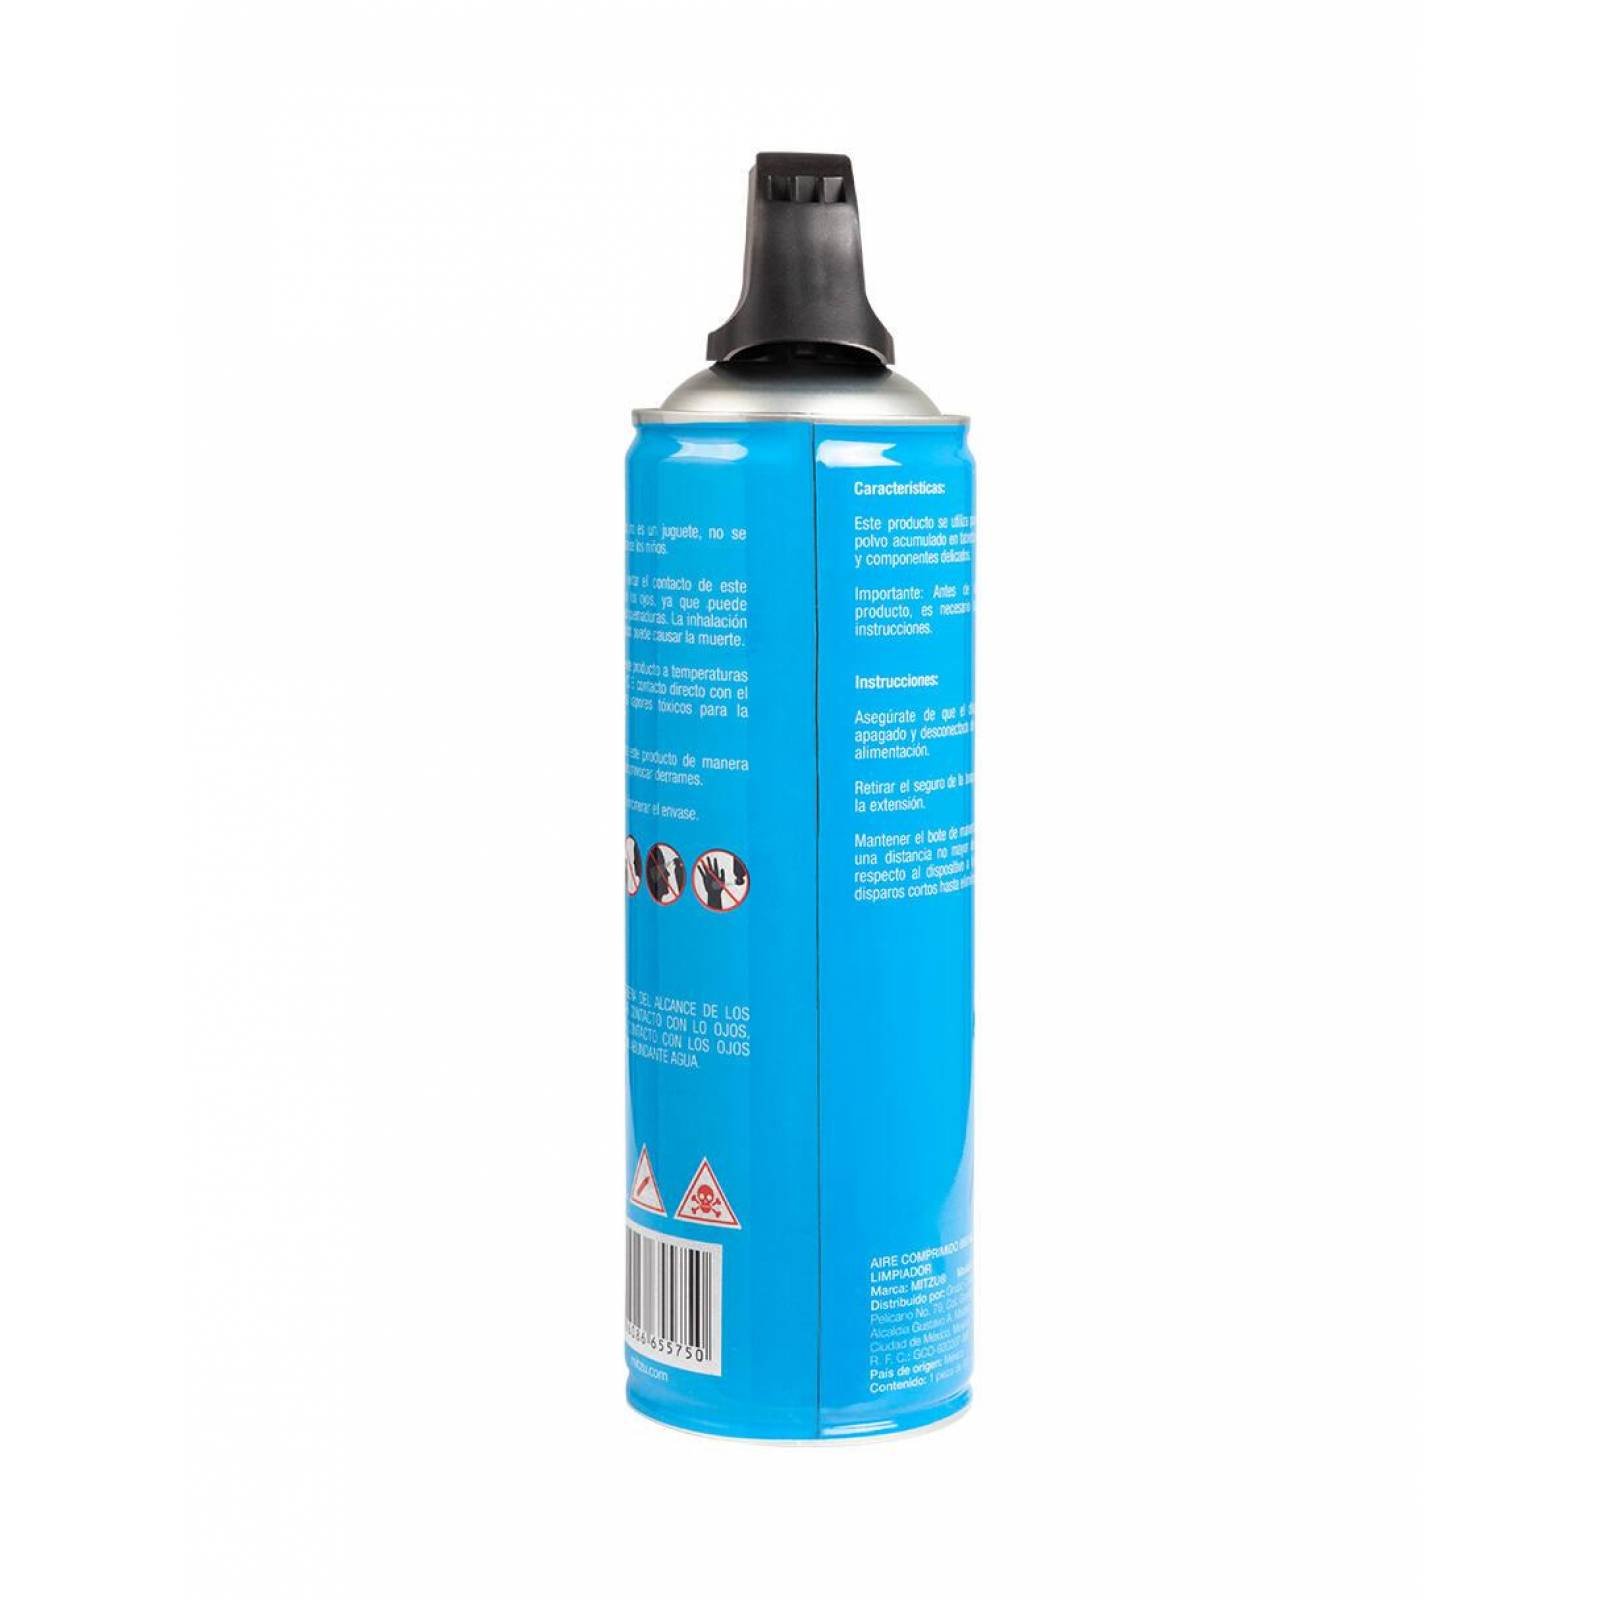 Mitzu® Aire comprimido limpiador 660 ml